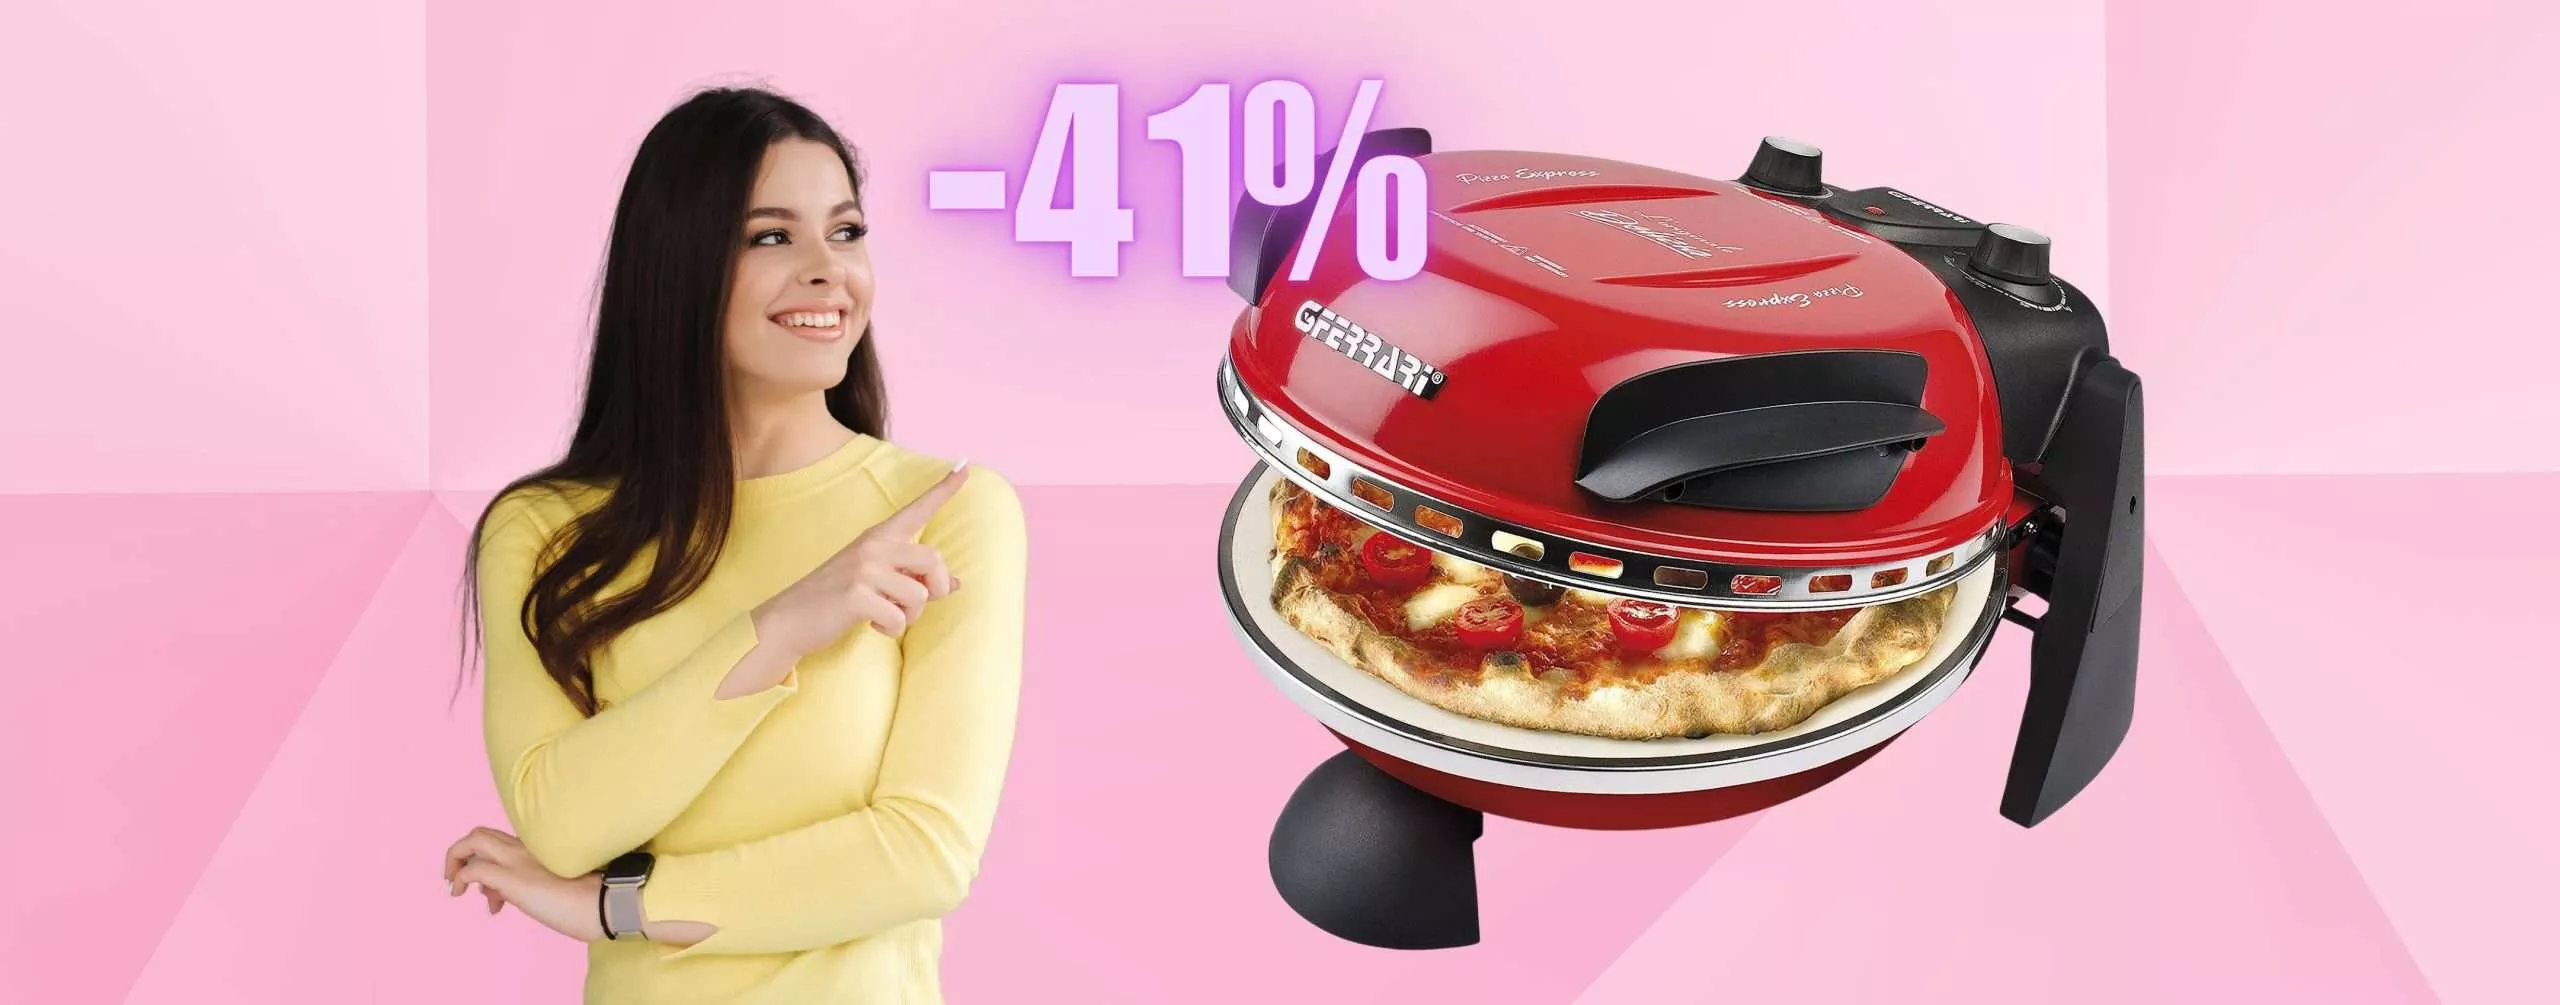 G3 Ferrari: con questo fornetto fai la pizza in 5 MINUTI (-41%)